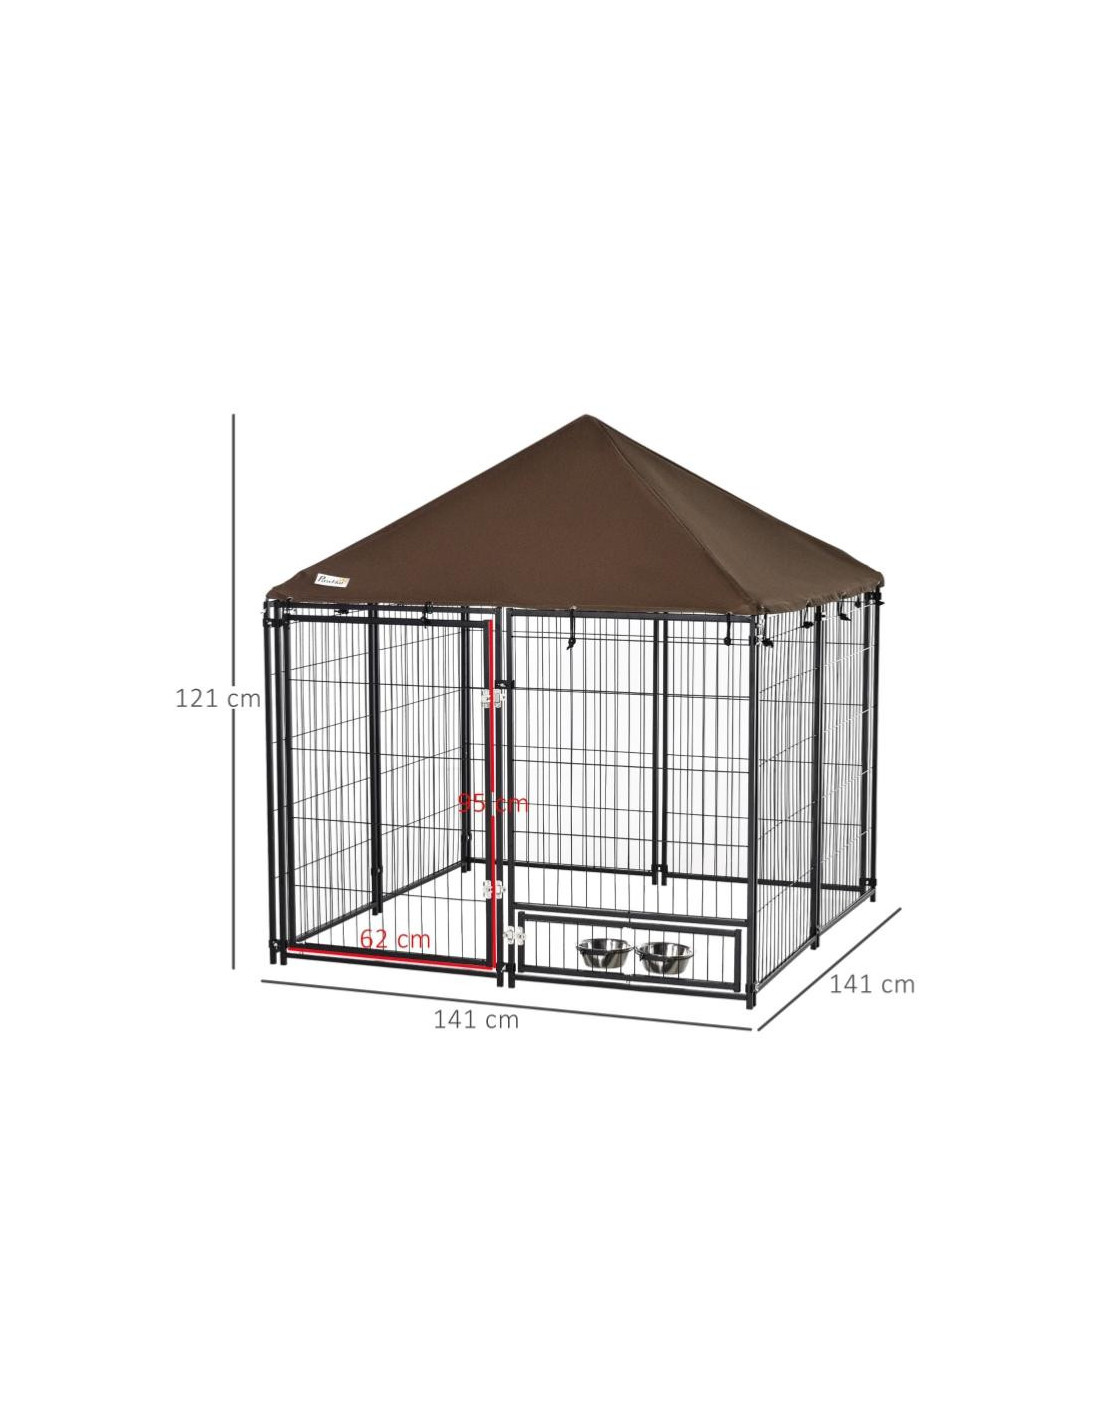 Chenil 400x300 cm enclos chien extérieur avec toit galvanisé costaud - Ciel  & terre